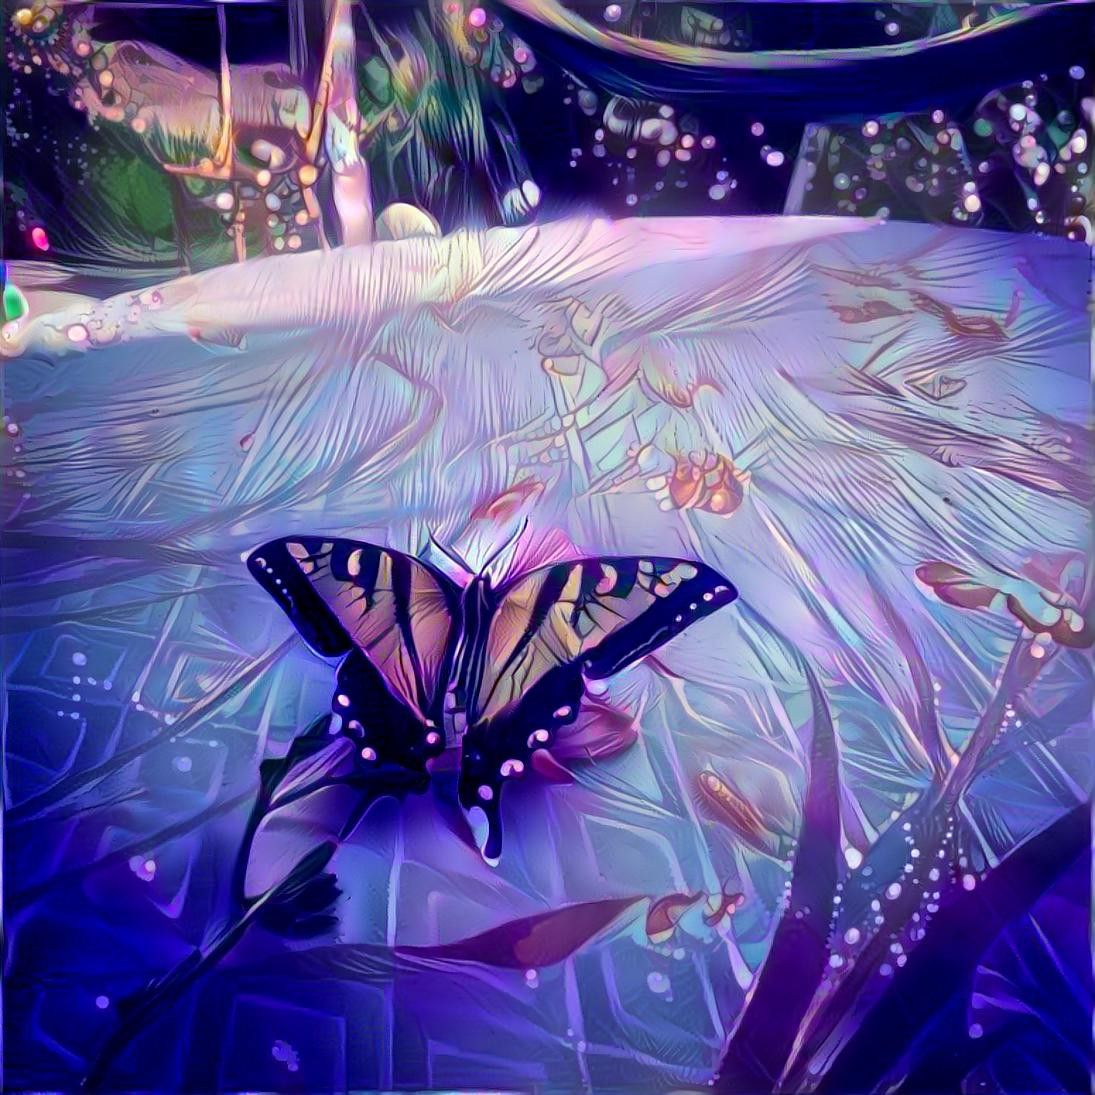 The purple butterfly